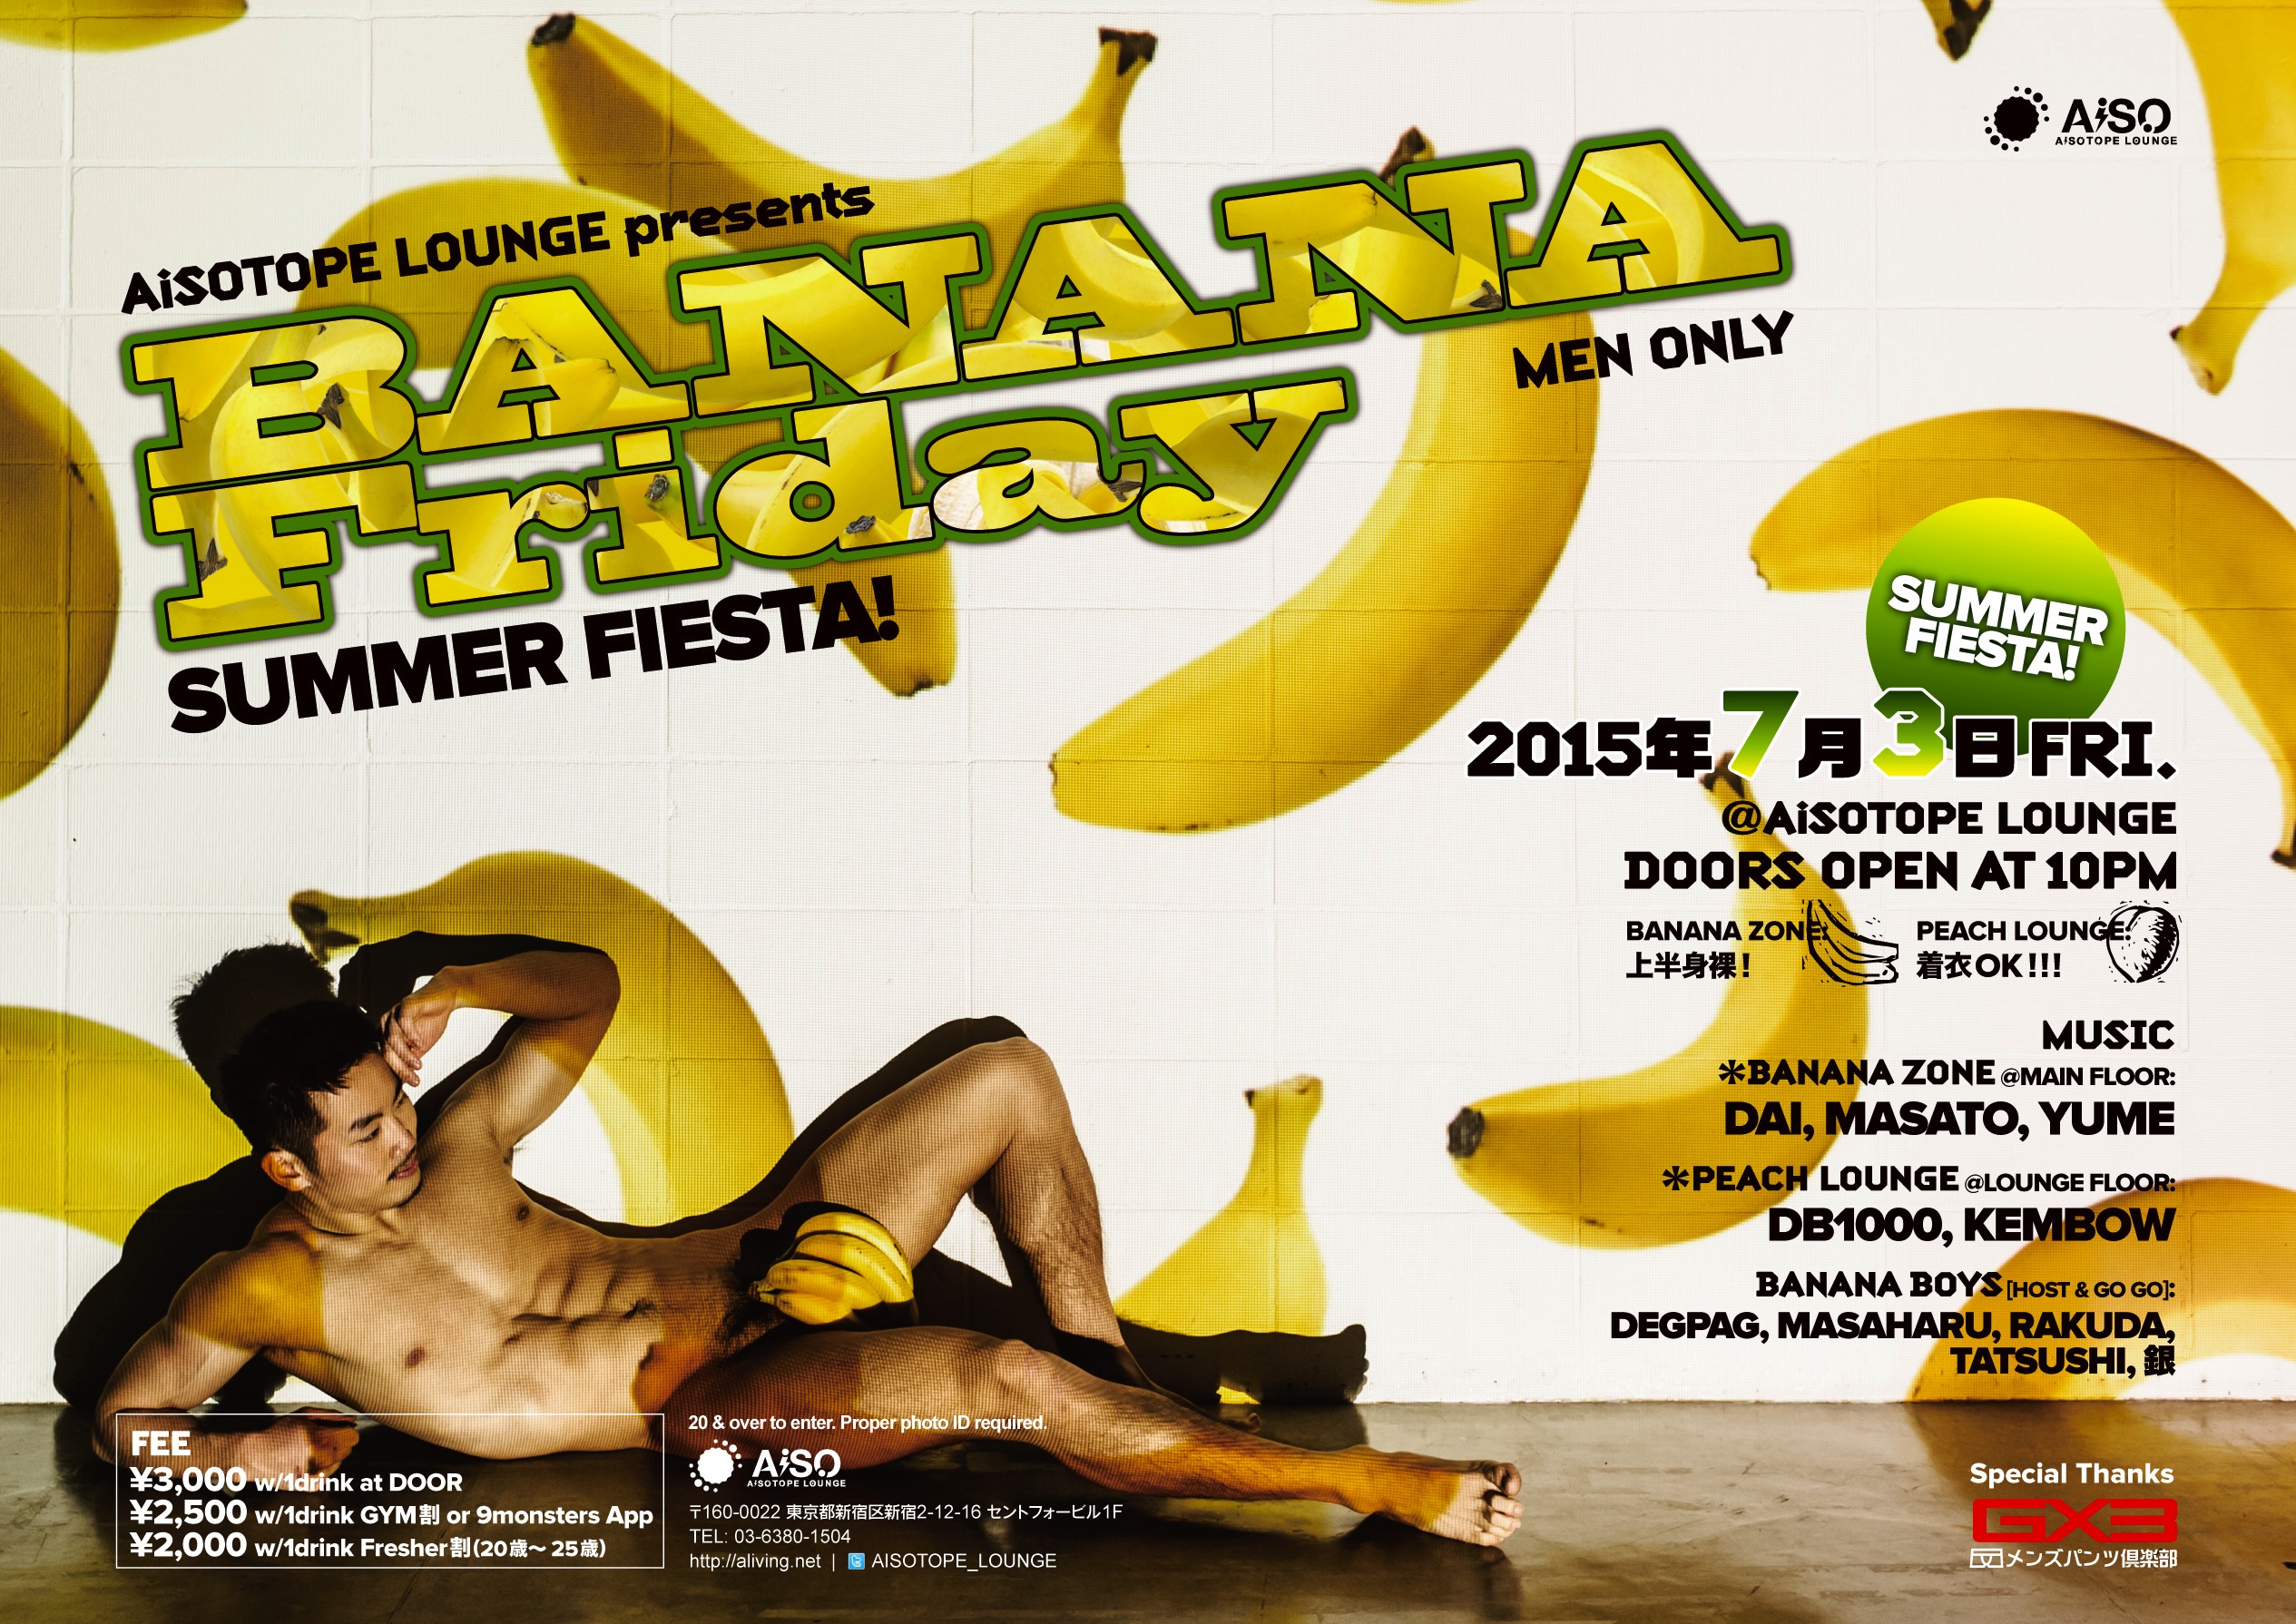 BANANA Friday "SUMMER FIESTA!" -Men Only-